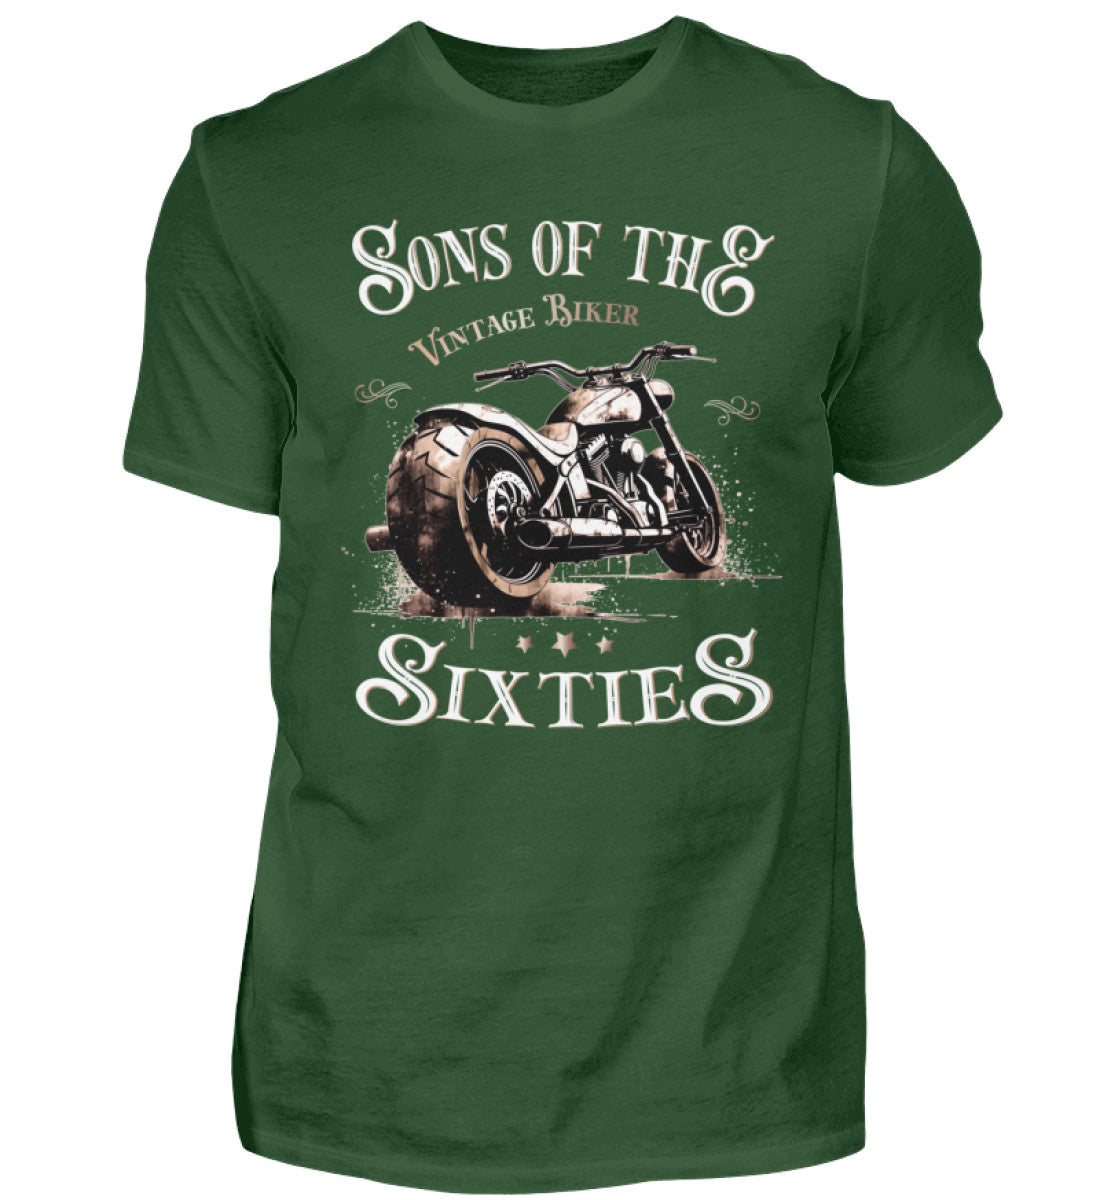 Ein Biker T-Shirt für Motorradfahrer von Wingbikers mit dem Aufdruck, Sons of the Sixties - Vintage Biker, in dunkelgrün.